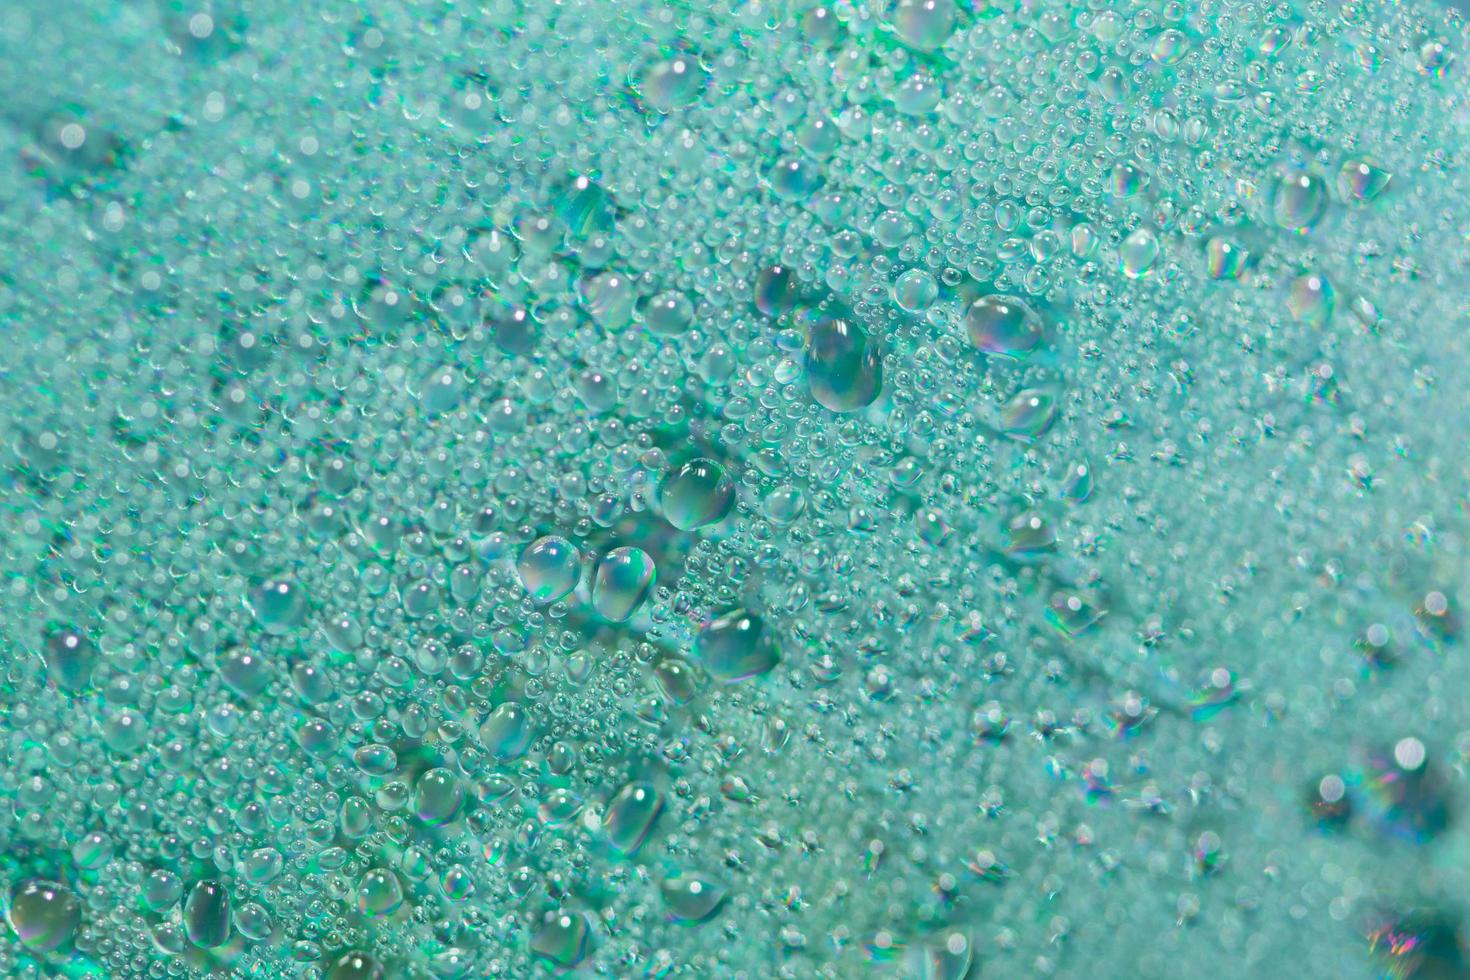 Water drops close-up photo